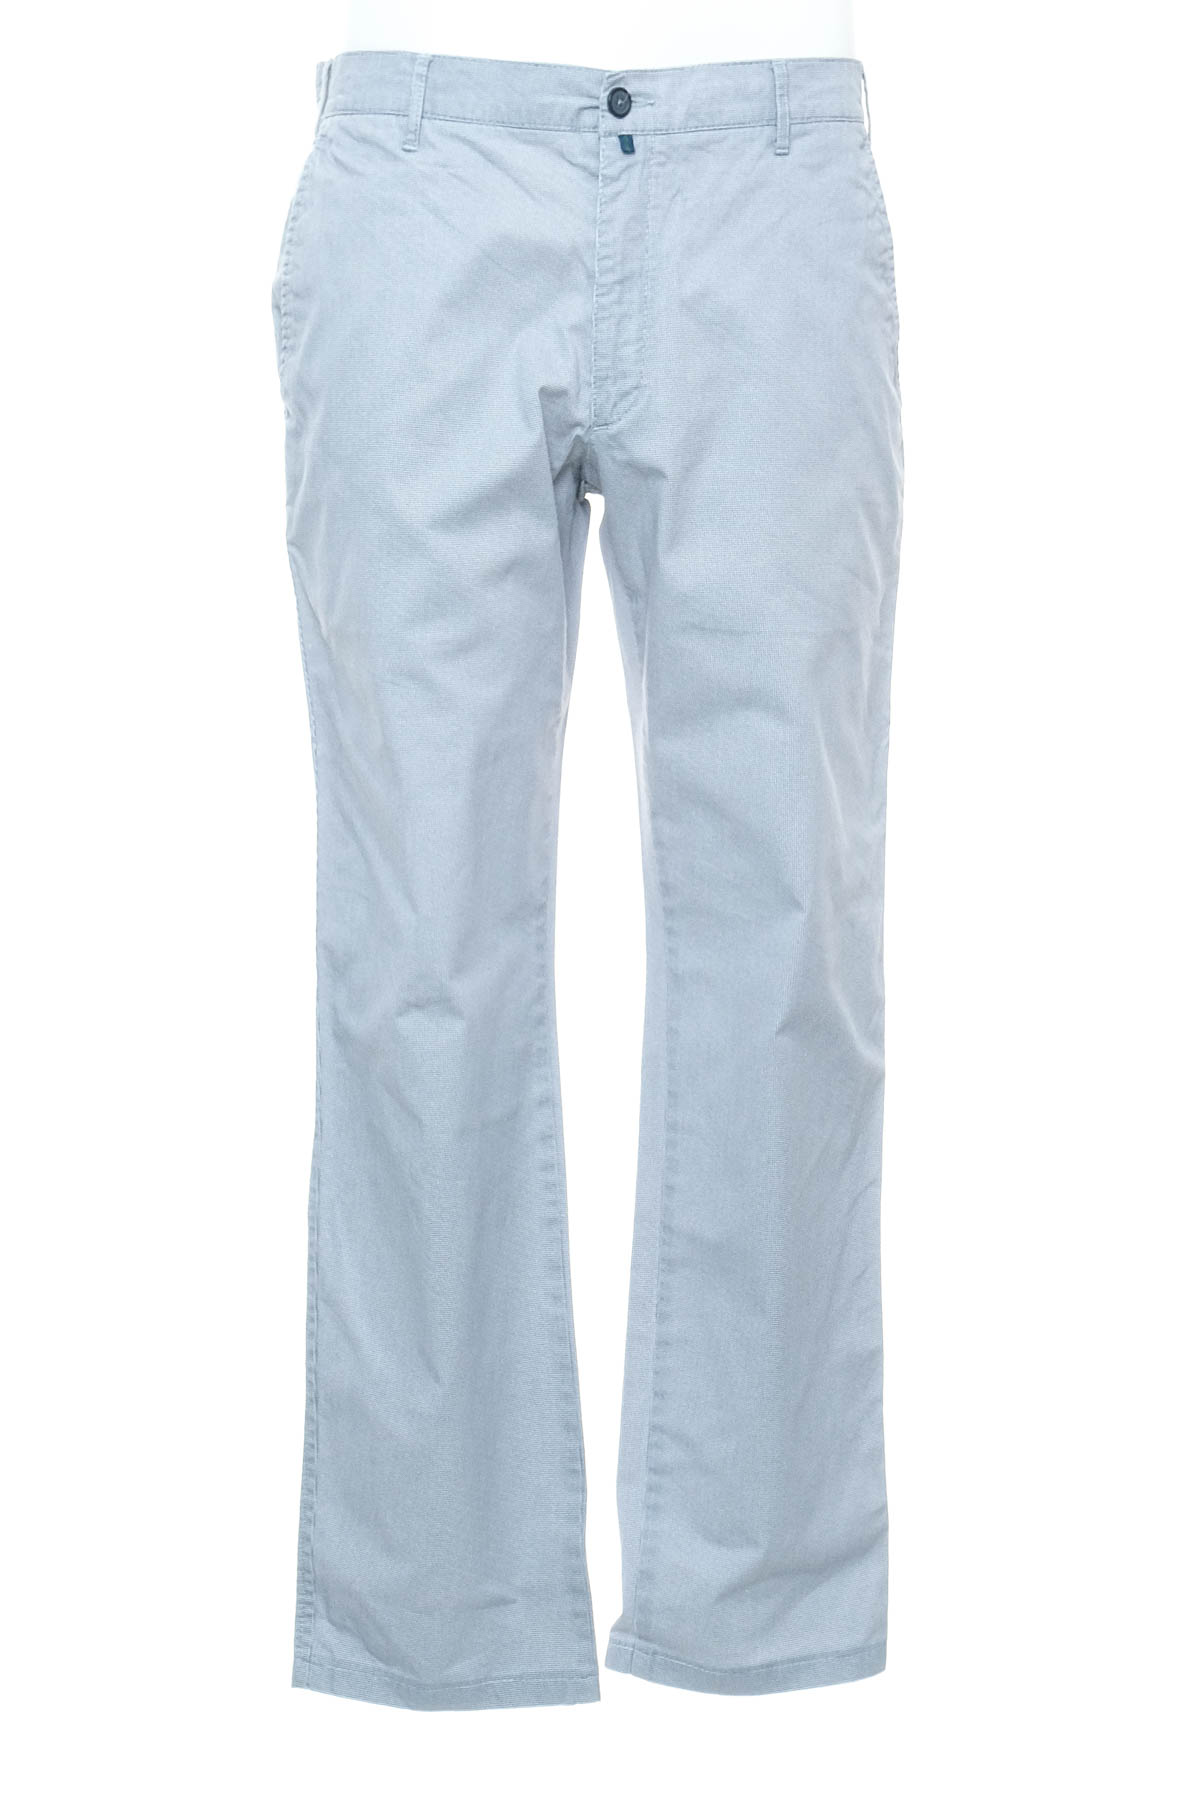 Pantalon pentru bărbați - FUGARO - 0